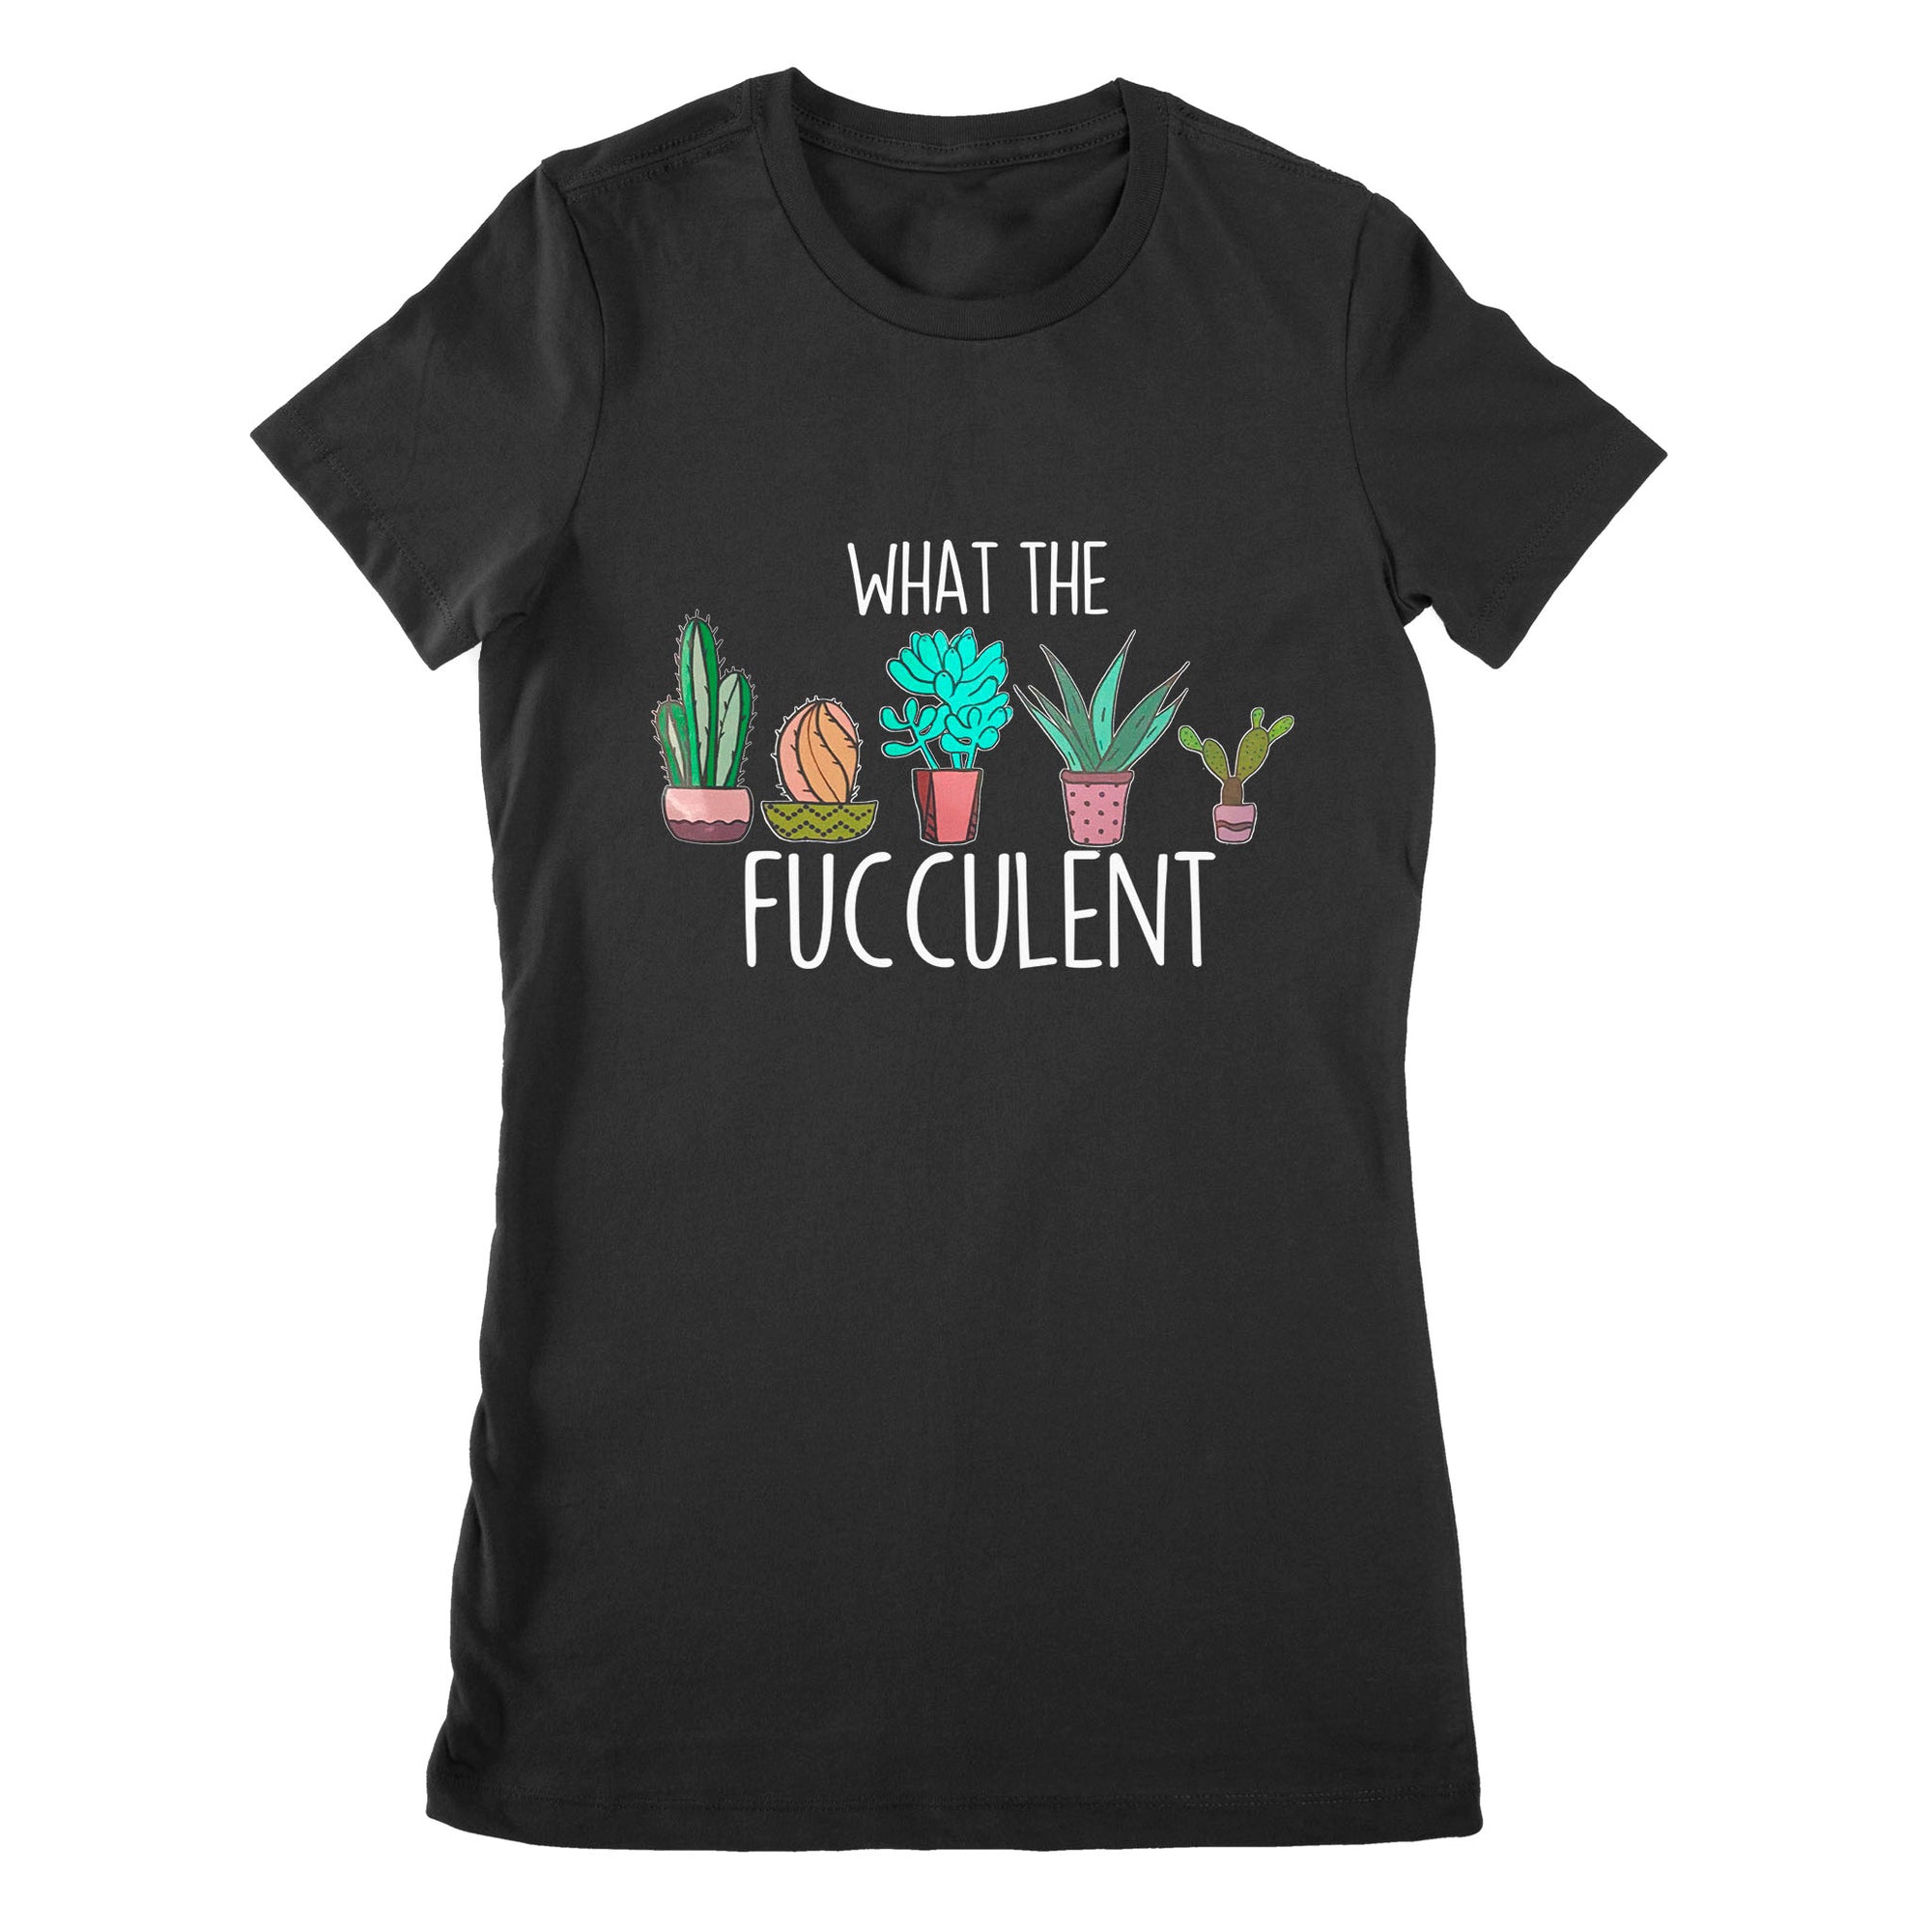 Premium Women's T-shirt - What the Fucculent Cactus Succulents Plants Gardening